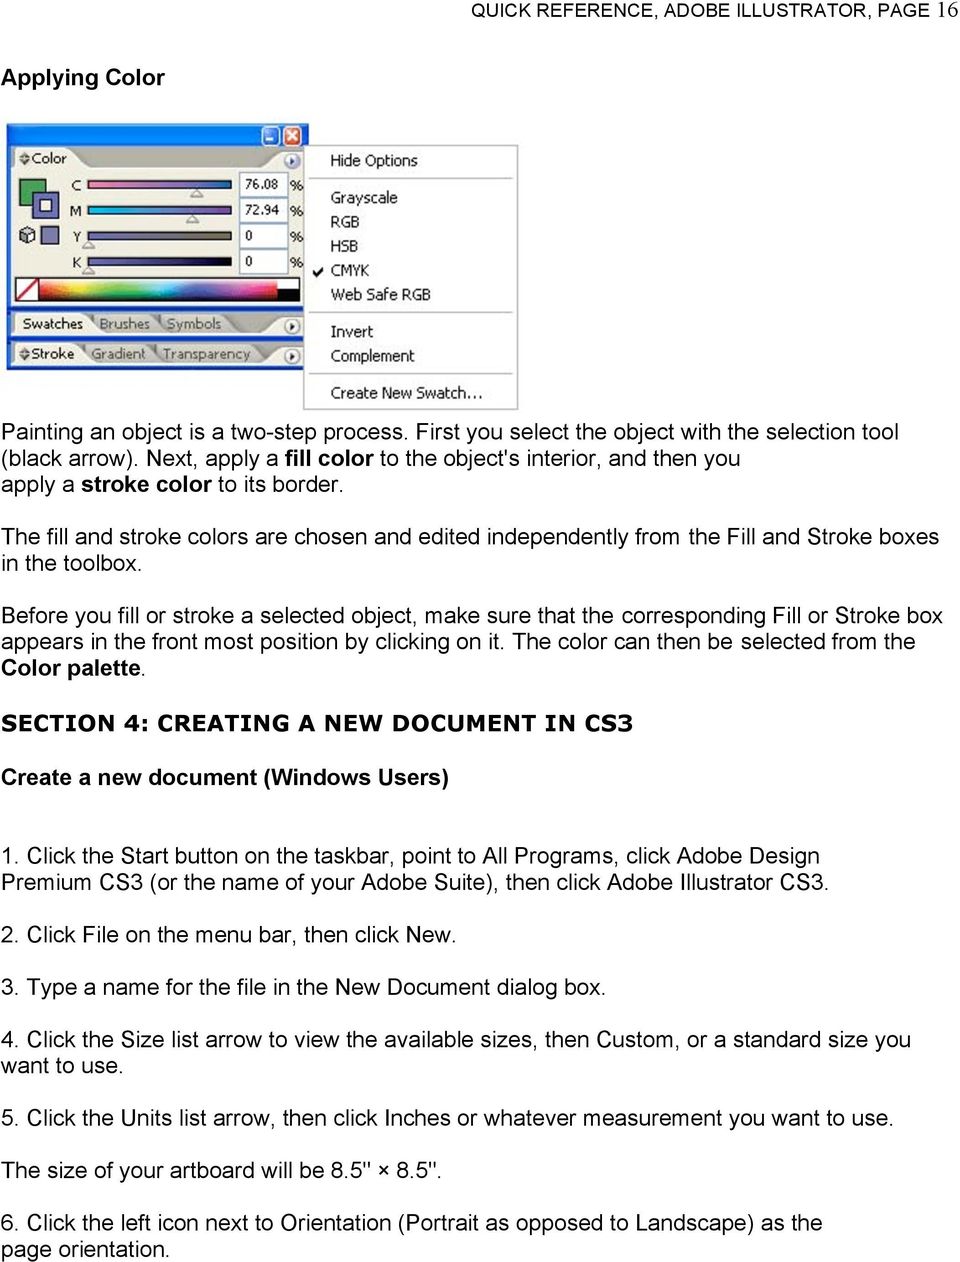 Adobe dreamweaver cs3 serial number